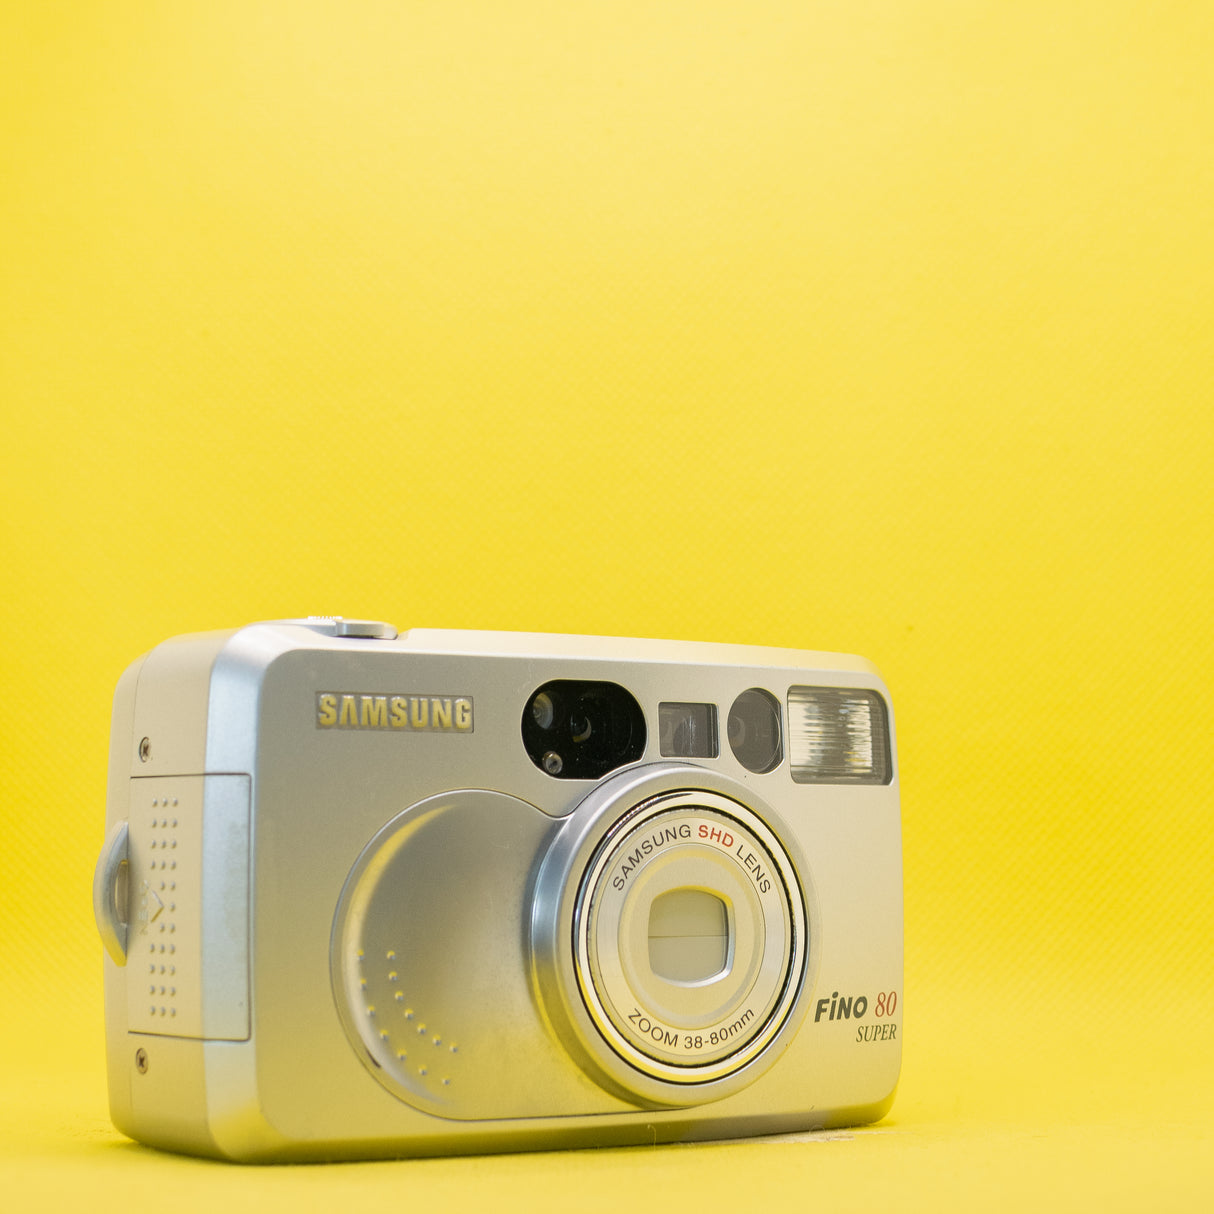 Samsung Fino 80 Super - 35mm Film Camera